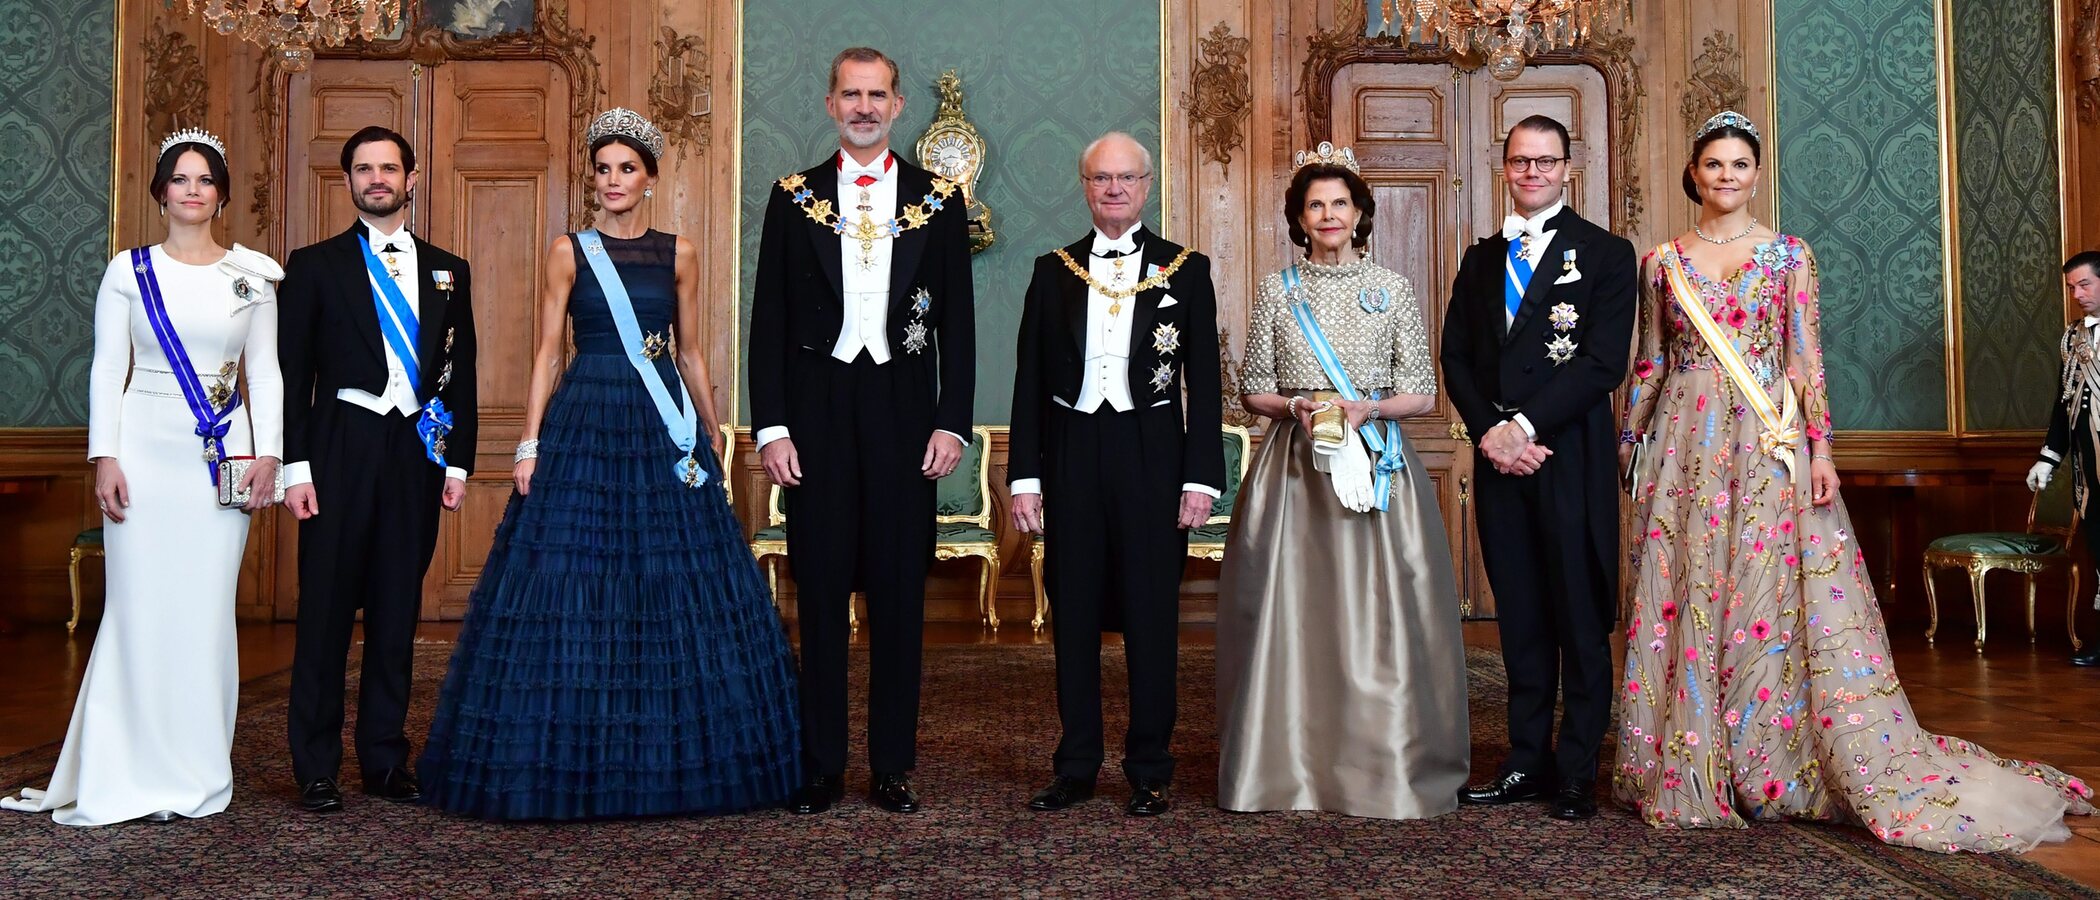 La Reina Letizia escoge para la cena de gala en Suecia un vestido de H&M que ya llevó la Princesa Victoria